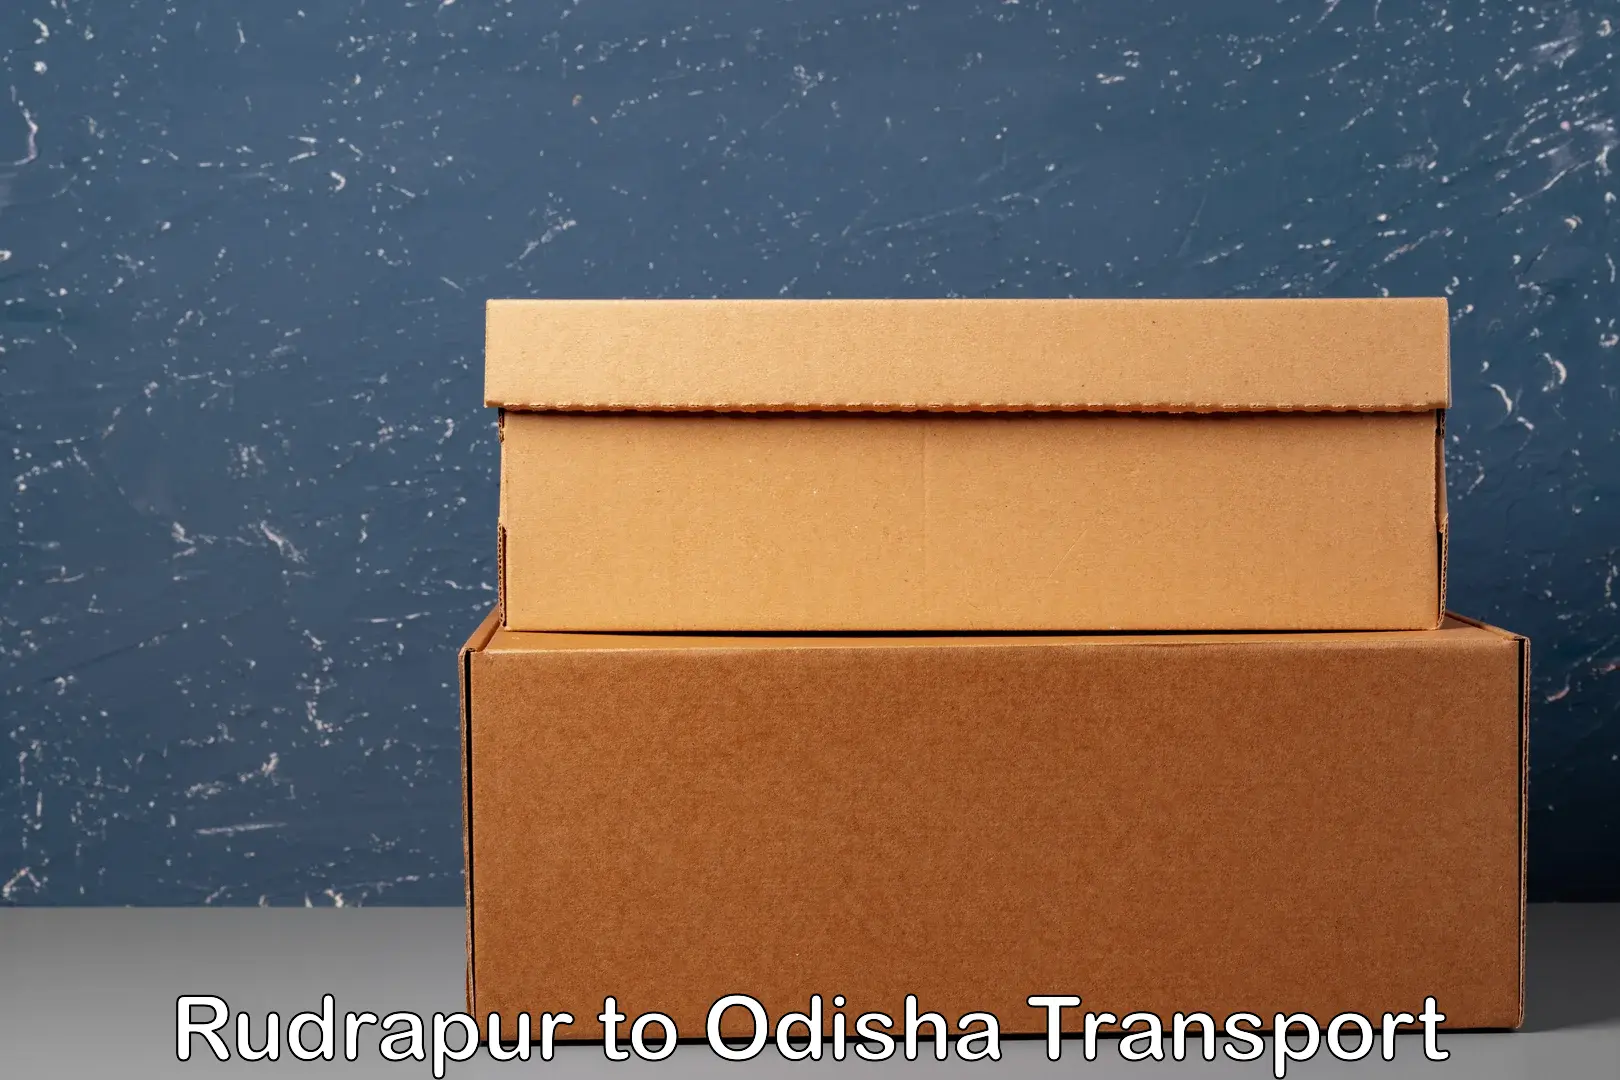 Door to door transport services Rudrapur to Odisha